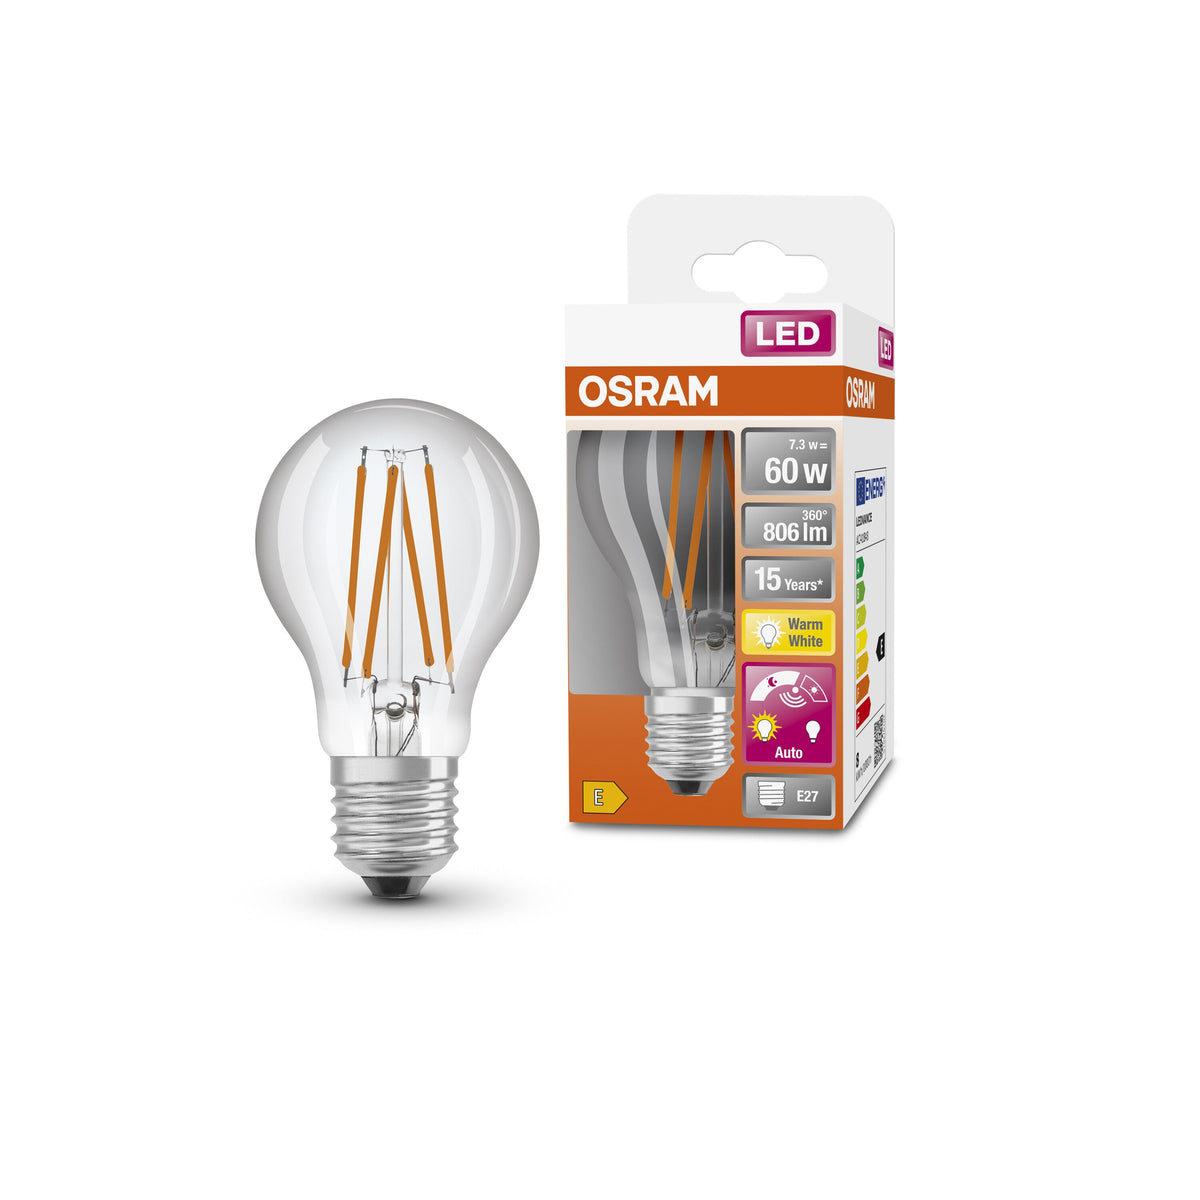 OSRAM Star+ LED-Lampe mit Tageslichtsensor für E27-Sockel, Filament-Optik ,Warmweiß (2700K), 806 Lumen, Ersatz für herkömmliche 60W-Leuchtmittel, nicht dimmbar, 1-er Pack